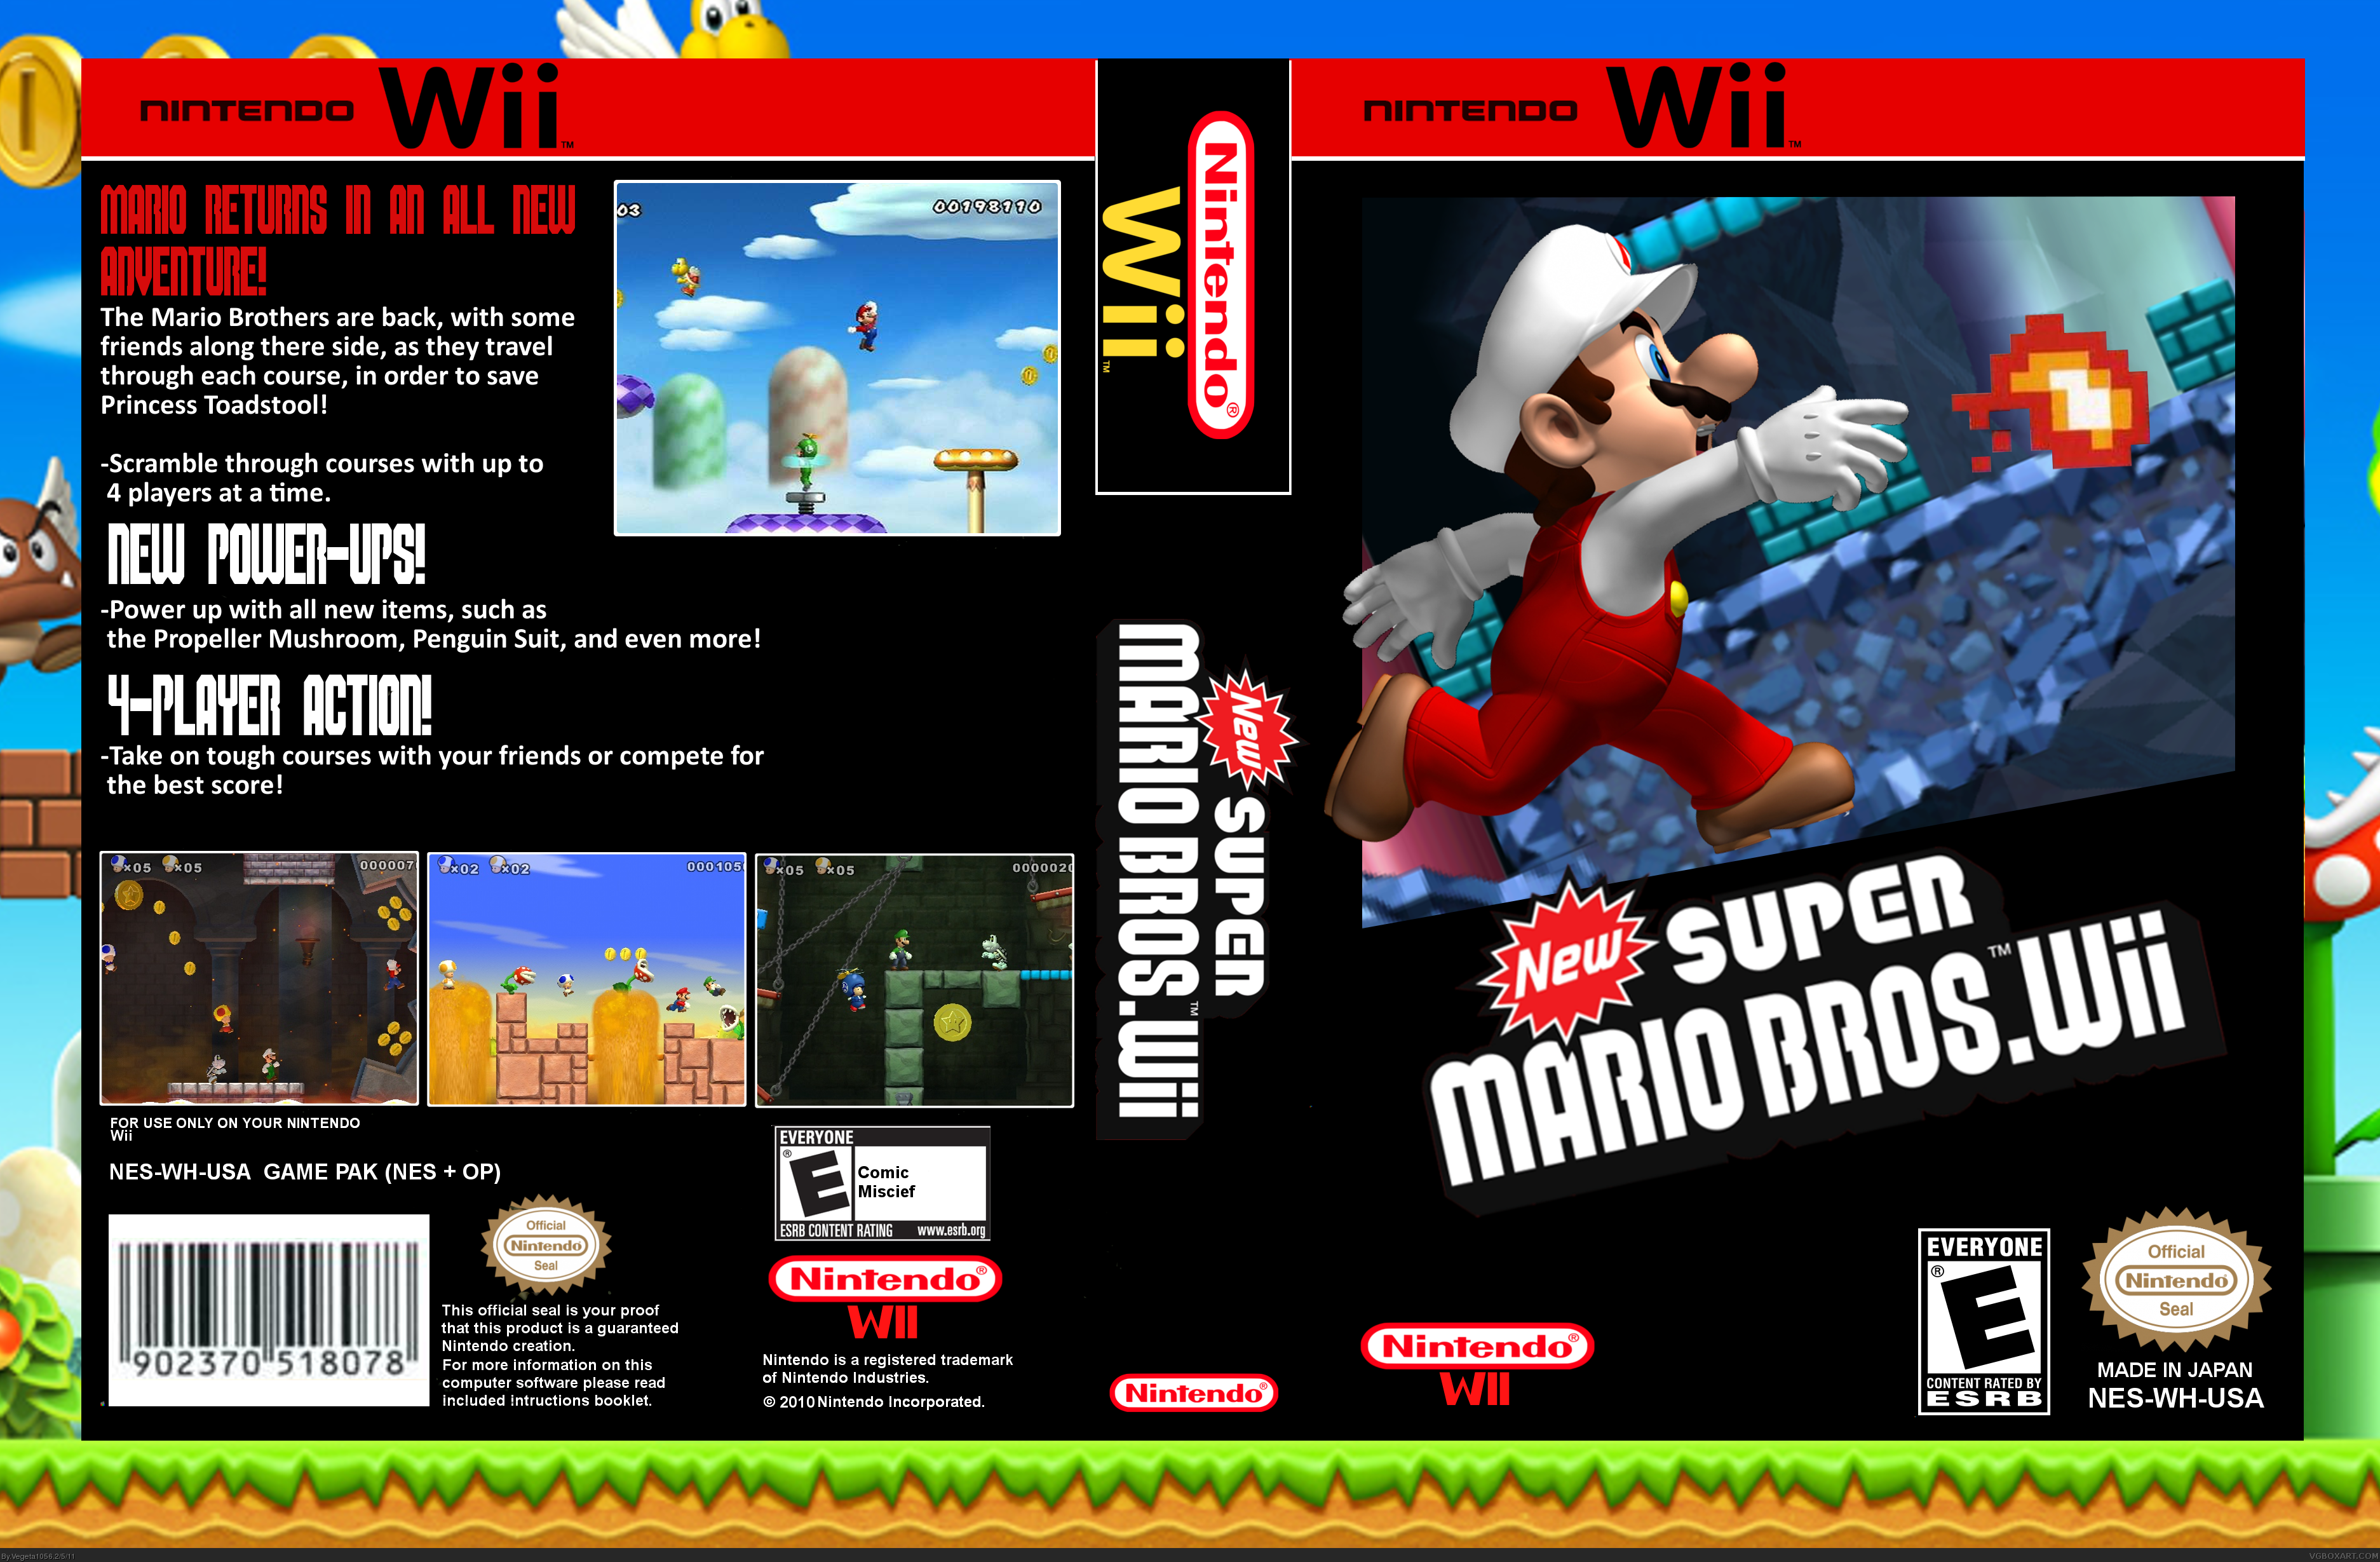 New Super Mario Bros. Wii box cover